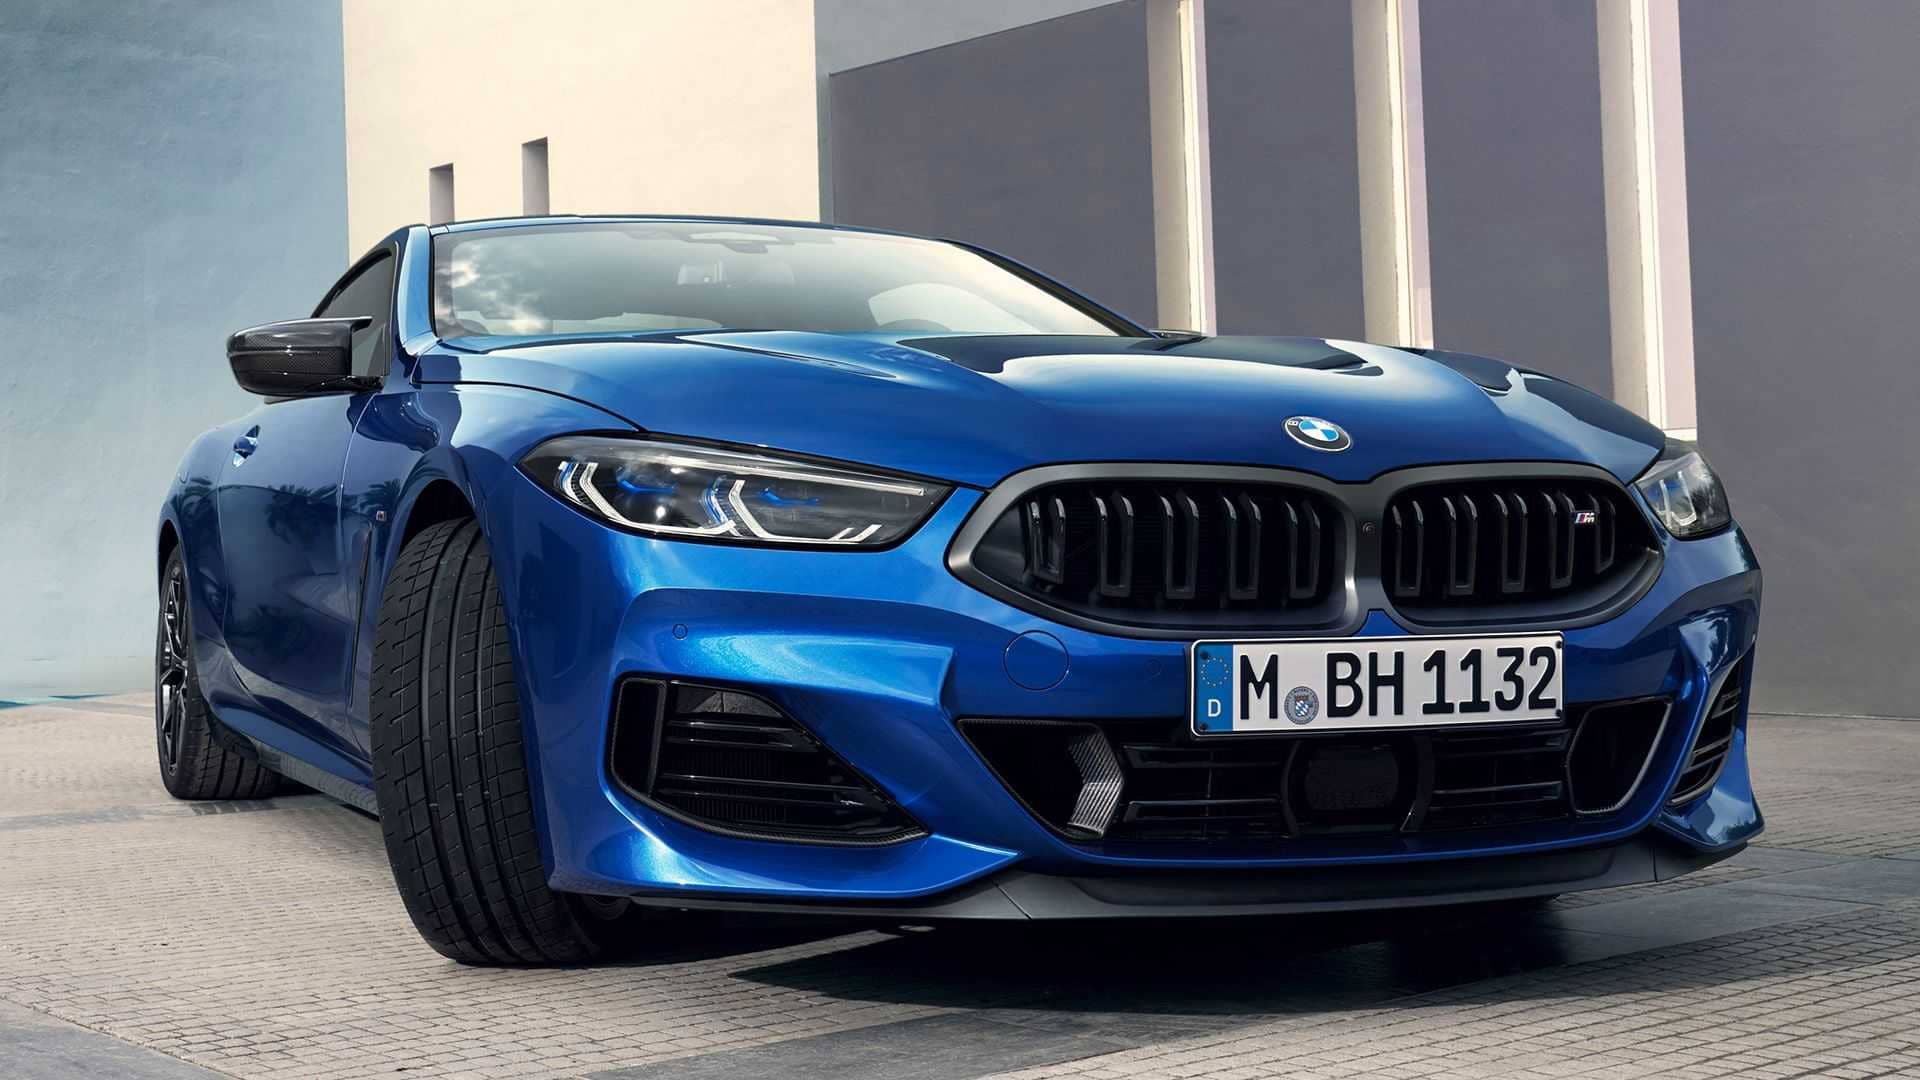 Vista frontal y lateral del BMW Serie 8 Coupé en azul vibrante.